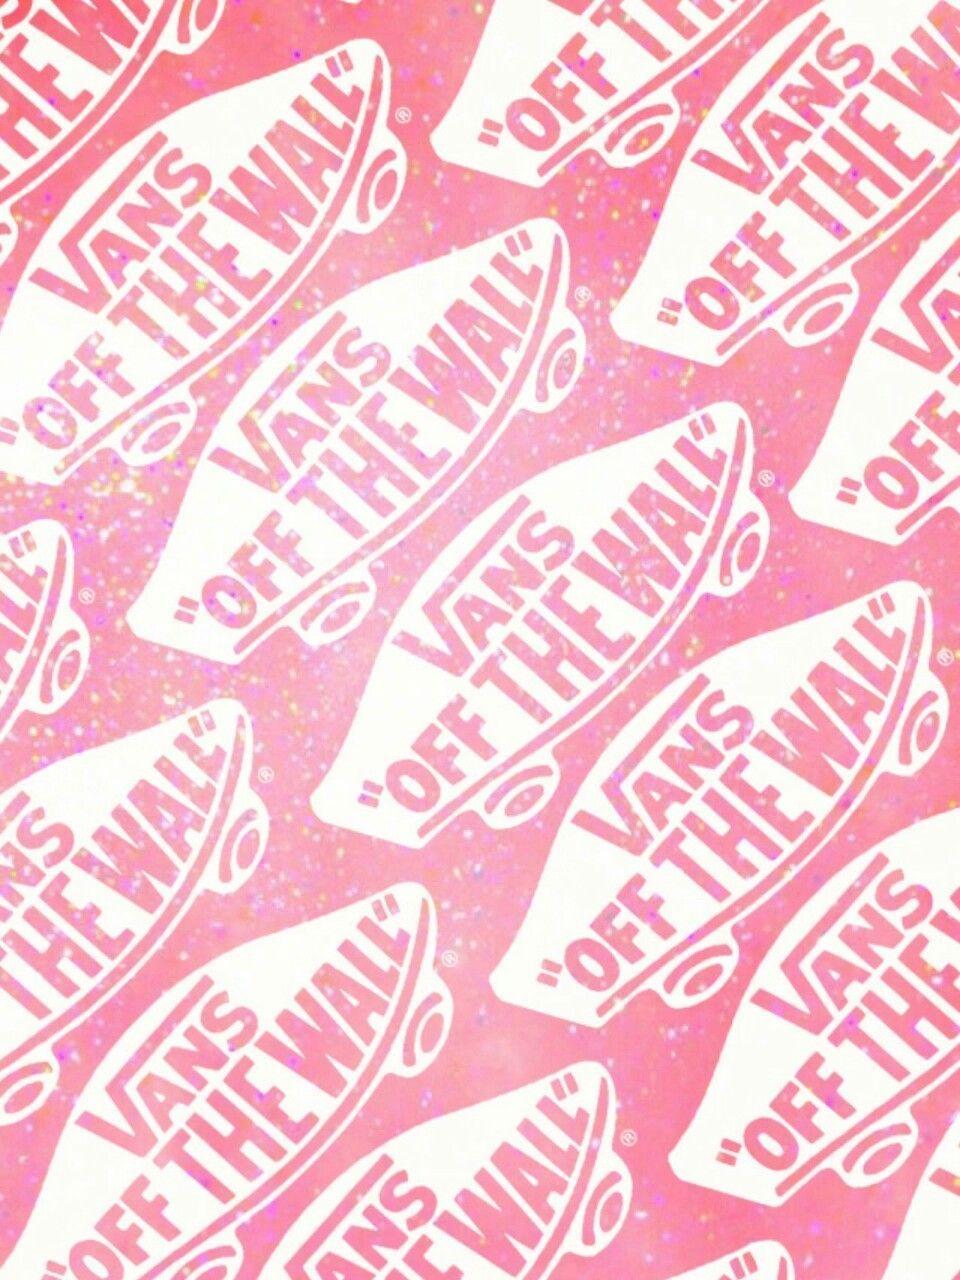 Pink Vans Logo - ⭐Hello, bitches⭐ — Vans logo, my edit | VANS 